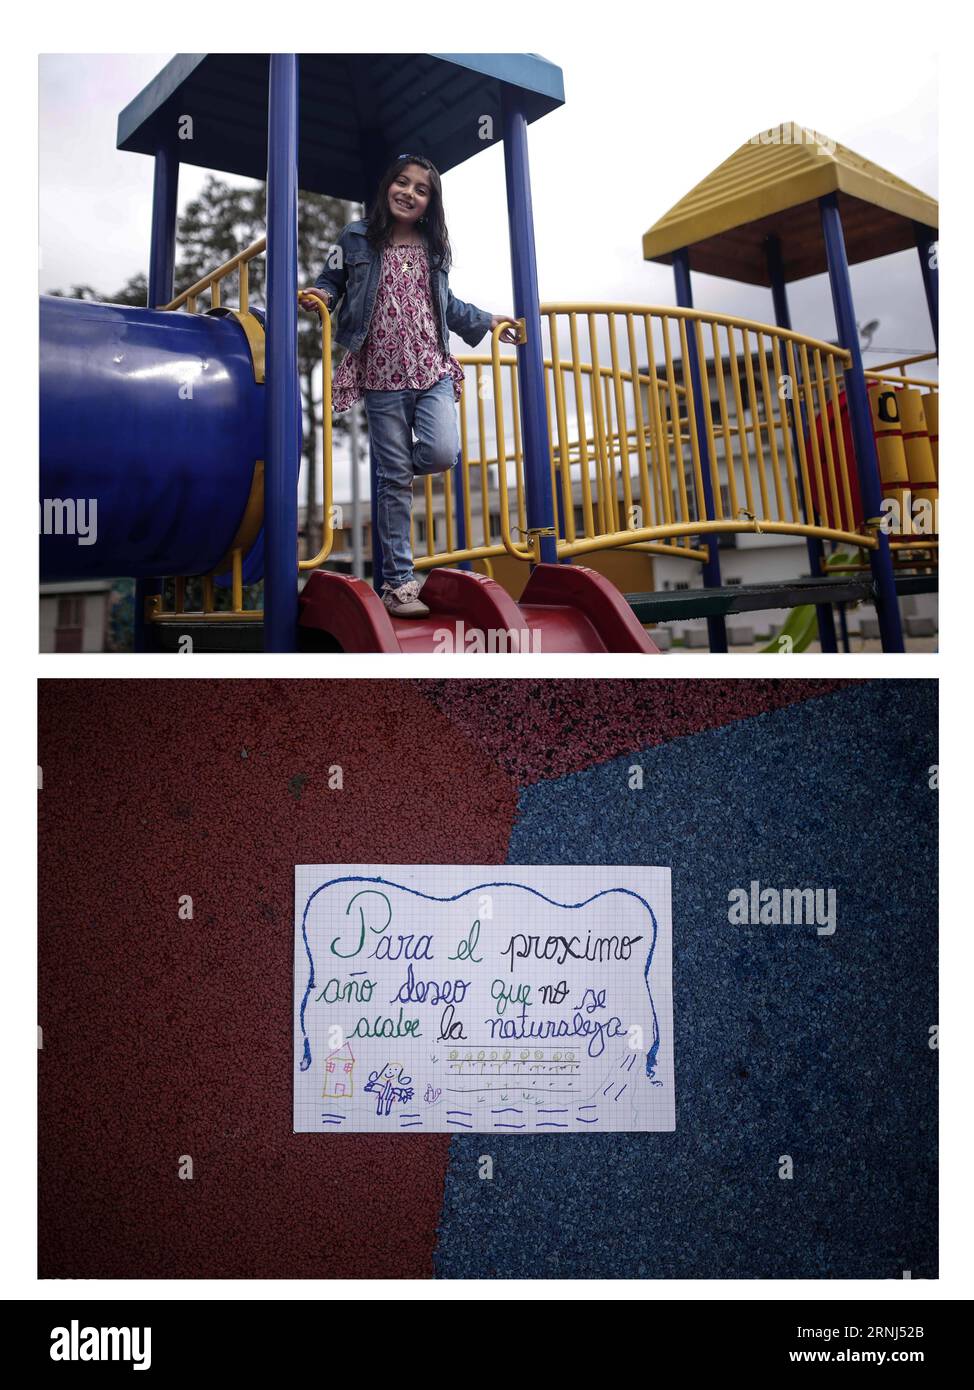 (170101) -- BOGOTA, 1. Januar 2017 -- Bilder, aufgenommen am 30. Dezember 2016, zeigen die siebenjährige Sophia, die in einem Park posiert, mit einem Brief, der ihr den Wunsch mitteilt, dass die Natur 2017 nicht endet, in der Stadt Bogota, der Hauptstadt Kolumbiens. Jhon Paz) (sxk) COLOMBIA-BOGOTA-SOCIETY-NEW YEAR-FEATURE e Jhonpaz PUBLICATIONxNOTxINxCHN Bogota Jan 1 2017 Bilder aufgenommen AUF DEC 30 2016 zeigt Sieben Jahr alte Sophia posiert in einem Park mit einem Brief mit ihrem Wunsch Thatcher die Natur endet nicht 2017 in der Stadt Bogota Hauptstadt von Kolumbien Jhon Paz sxk Colombia Bogota Society New Year Feature e Jhonpaz PUBLICATIONxNO Stockfoto